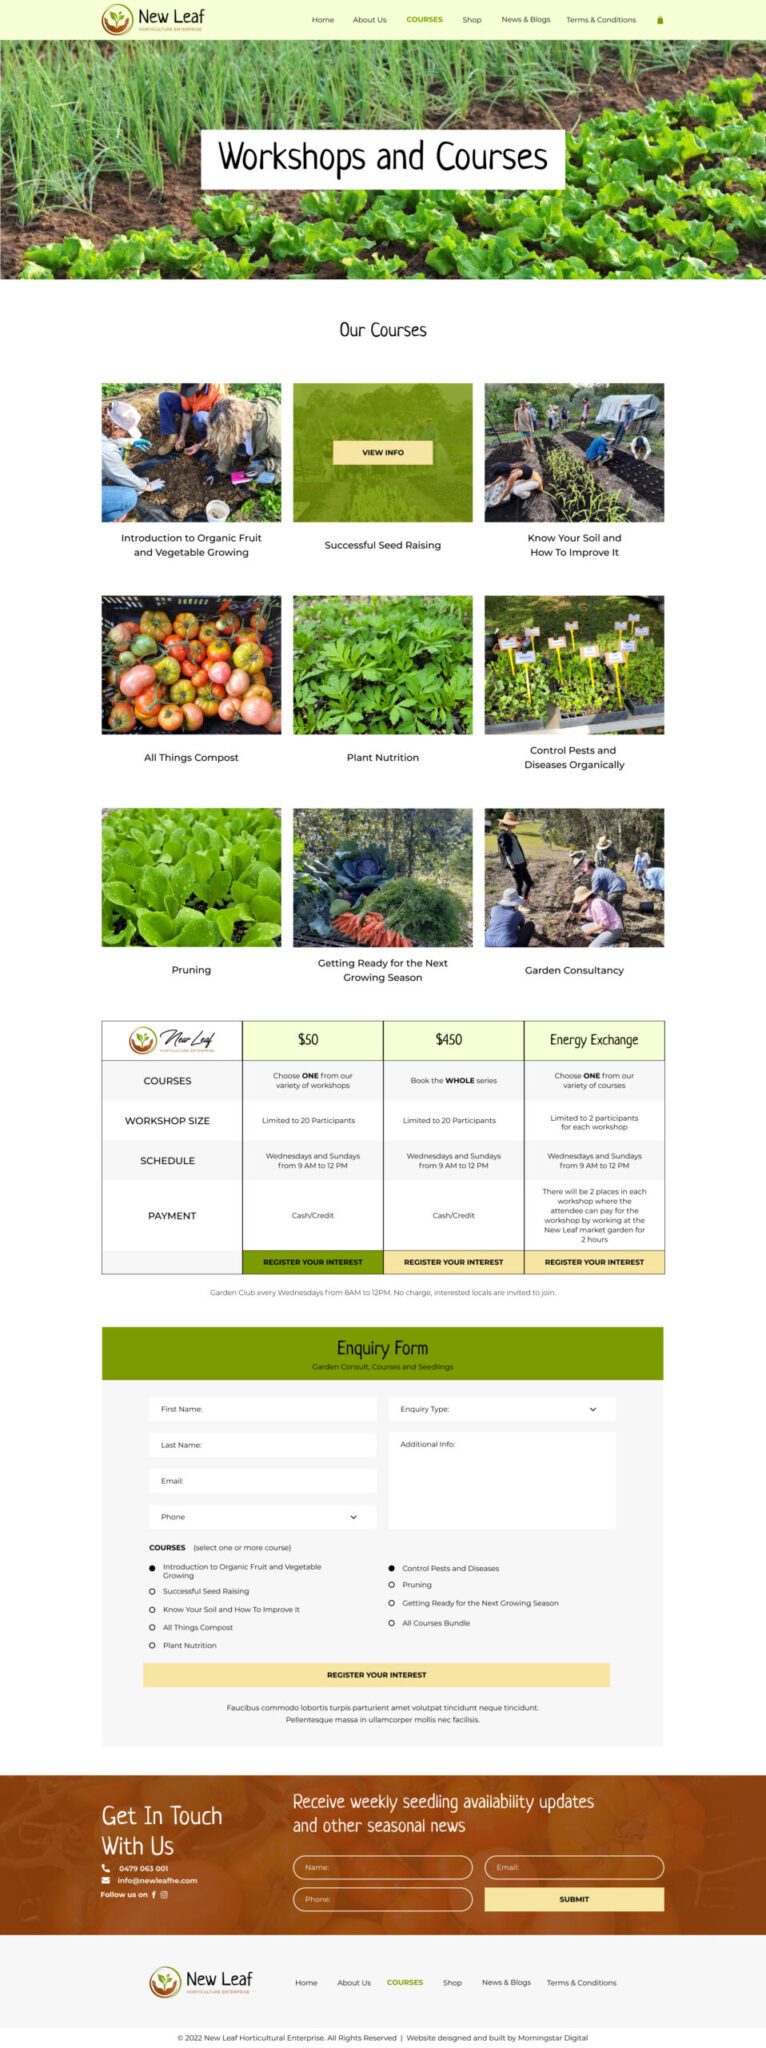 New Leaf Horticultural Enterprise Courses